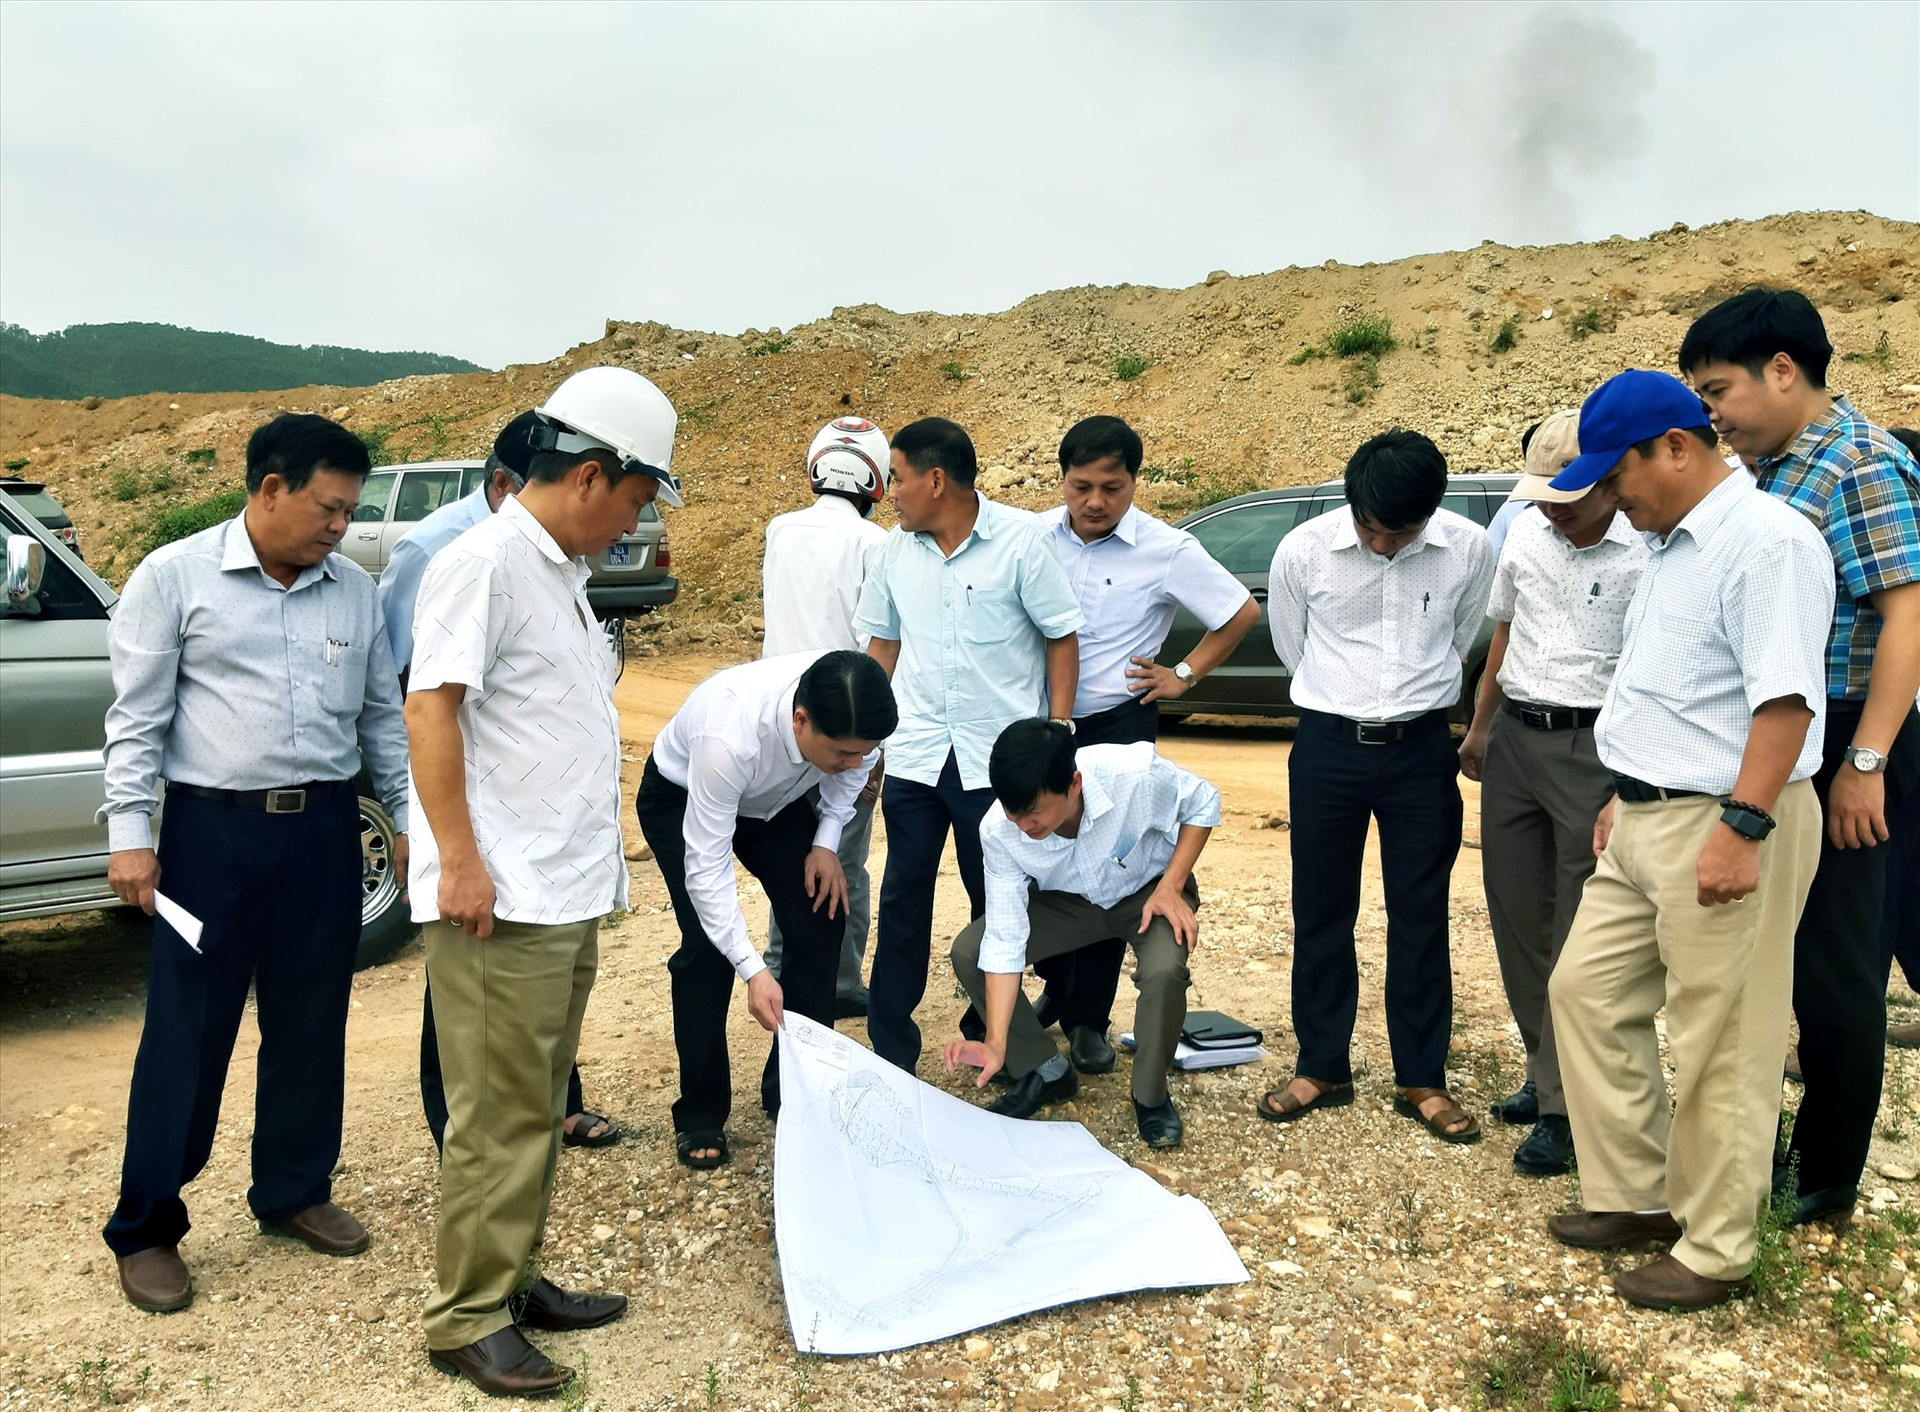 Phó Chủ tịch UBND tỉnh Trần Văn Tân cùng đại diện một số ngành liên quan kiểm tra sơ đồ xây dựng hồ chứa nước Lộc Đại.   Ảnh: VĂN SỰ